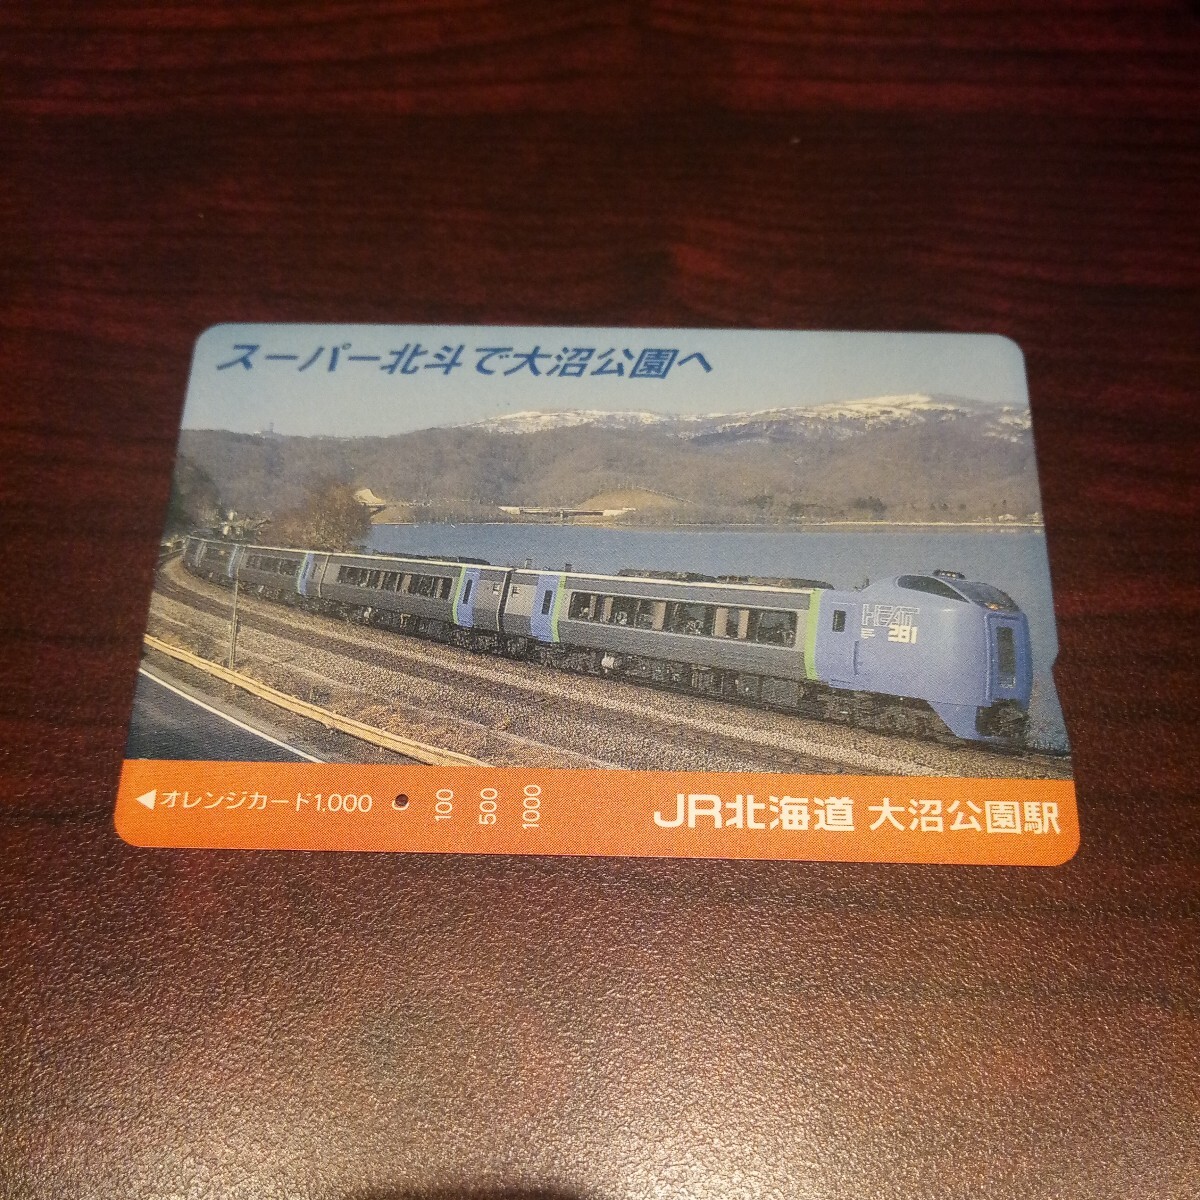 【1穴】使用済みオレンジカード JR北海道 スーパー北斗で大沼公園へ 9805の画像1